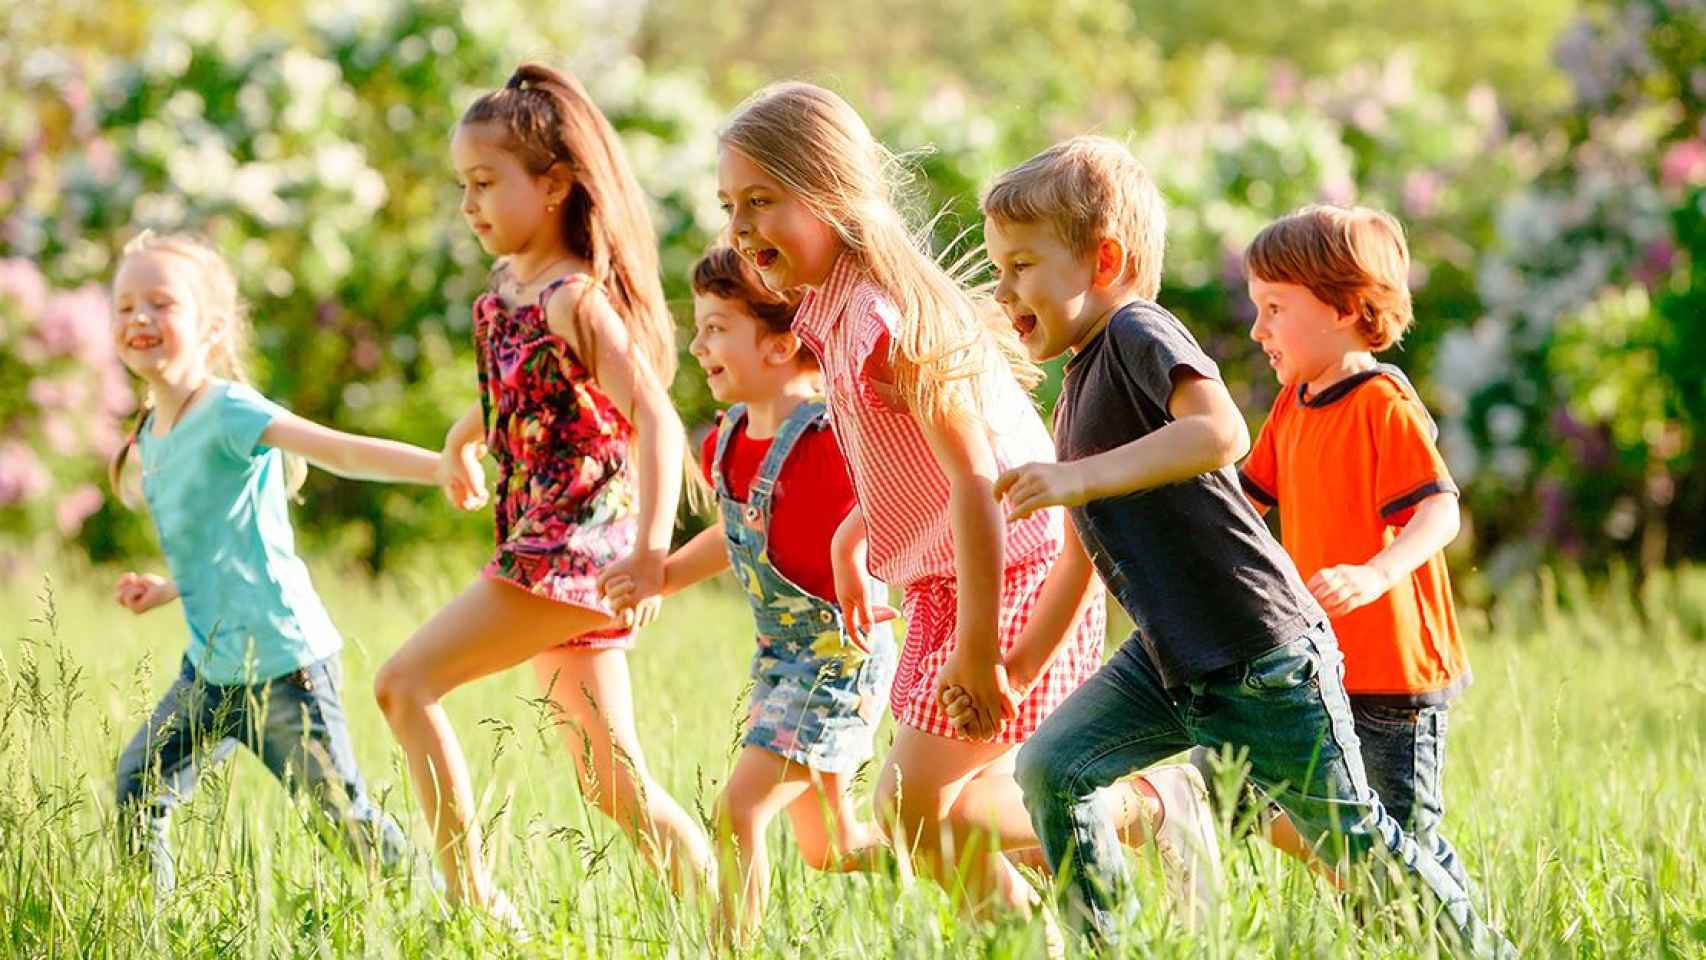 Las actividades de ocio en verano contribuyen al bienestar y a la educación de niños y jóvenes / Shutterstock